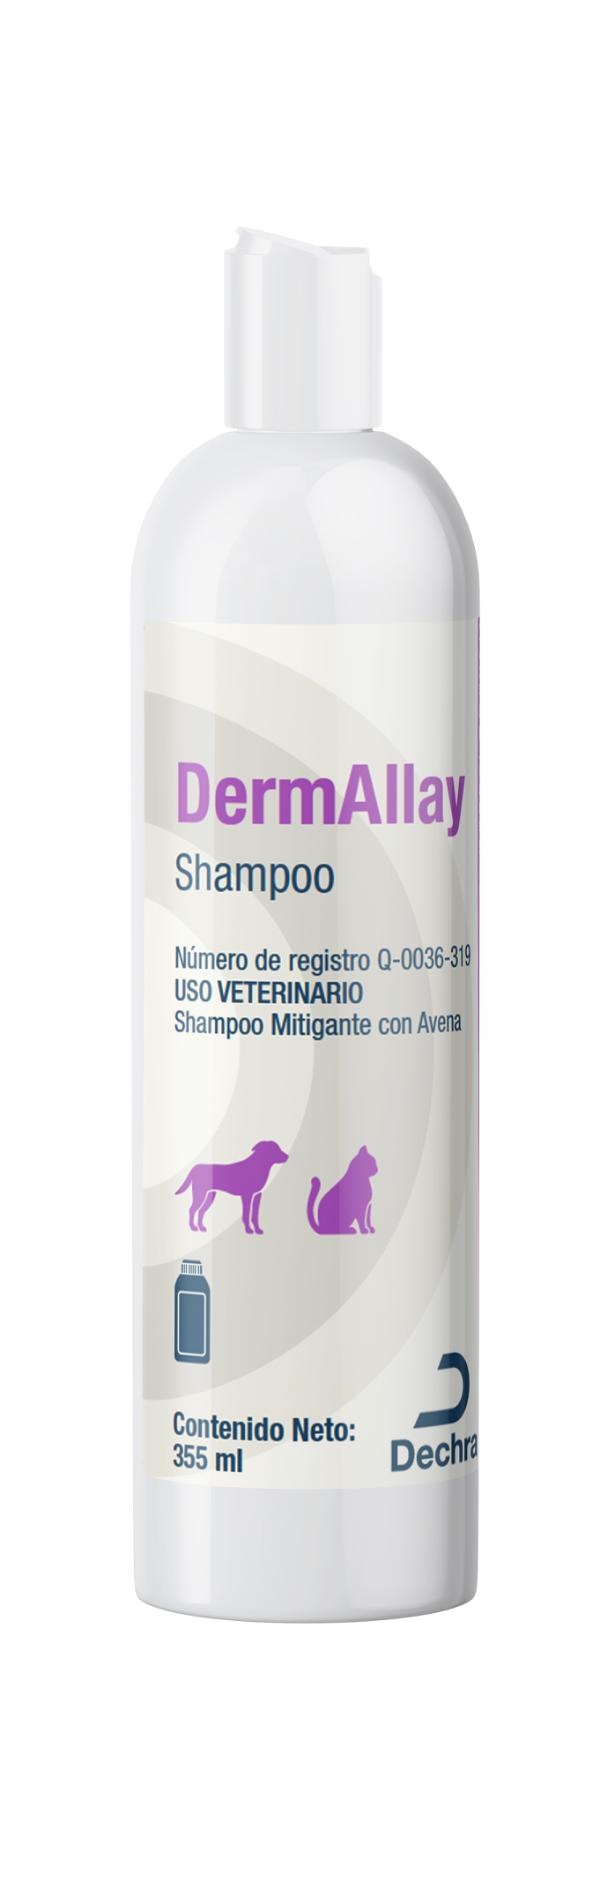 DermAllay Shampoo 355ml